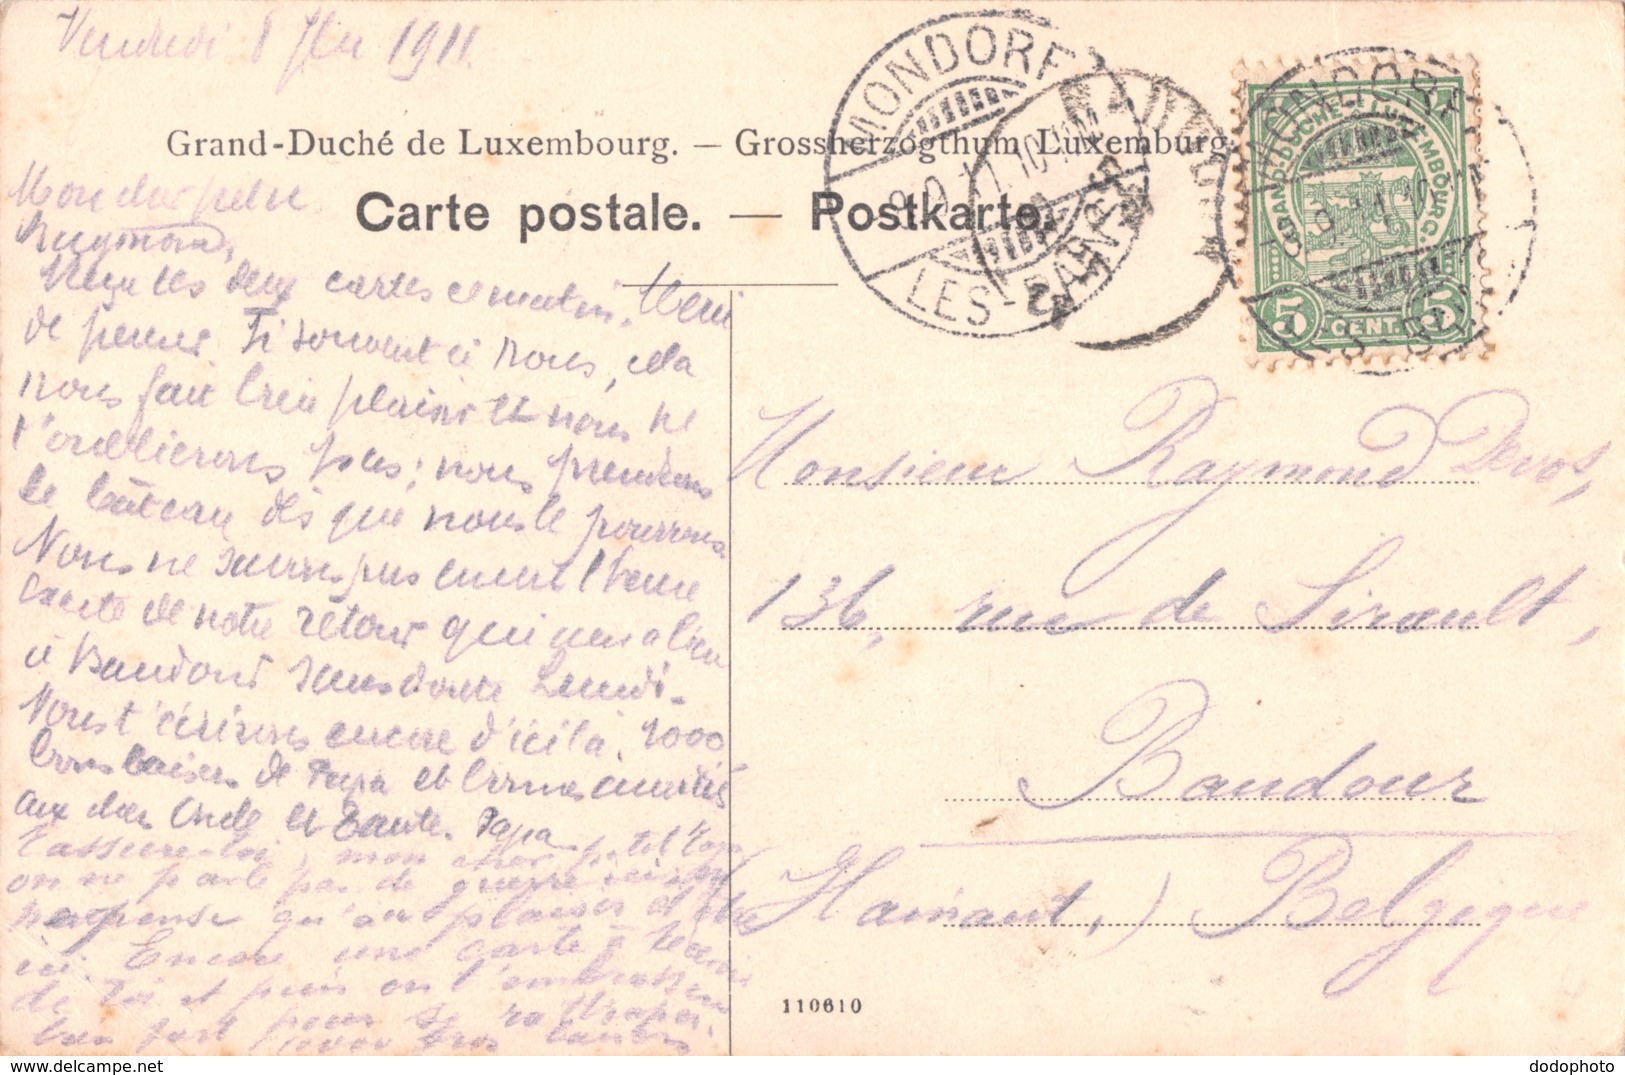 R334086 Environs De Mondorf Les Bains. Le Castel Entre Mondorf Et Altwies. 1911 - World